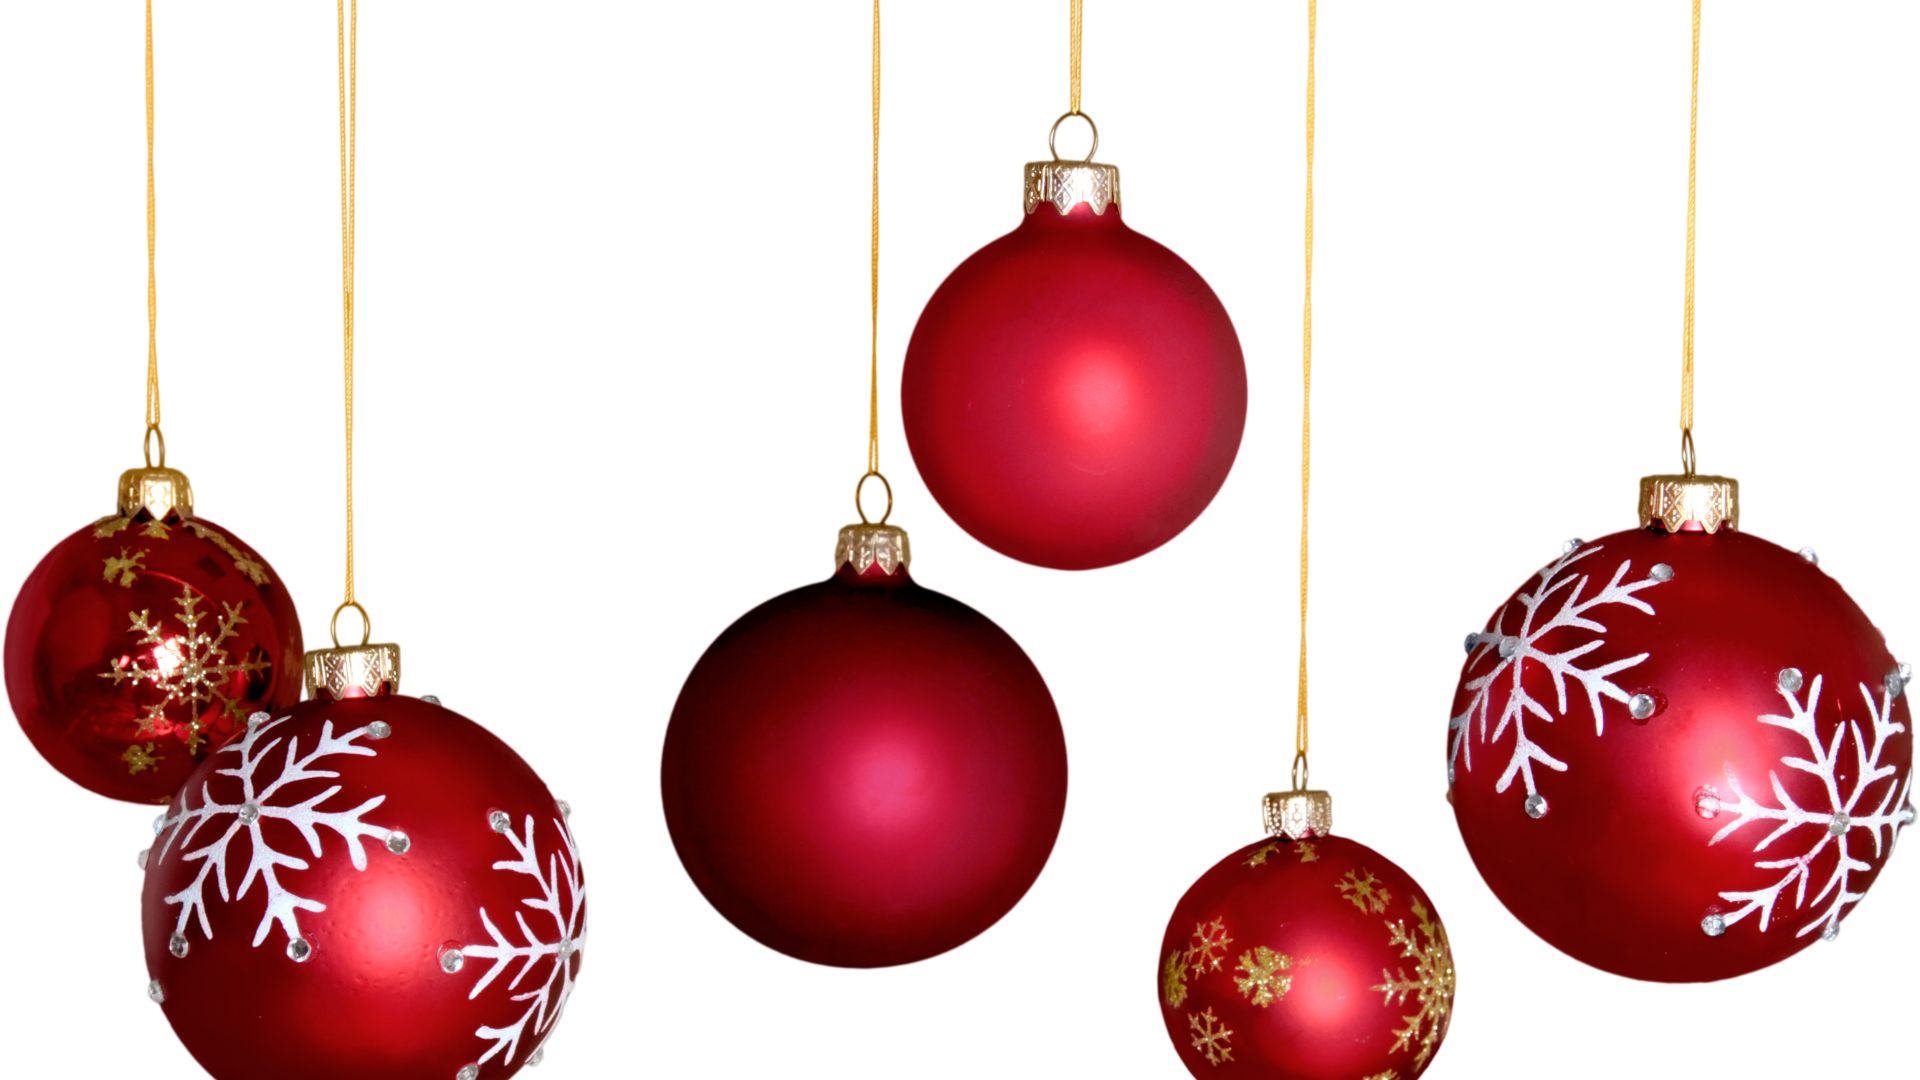 Imagem de fundo branco, com destaque para as bolas de Natal na cor vermelha. Algumas são lisas e outras decoradas nas cores branco e dourado.